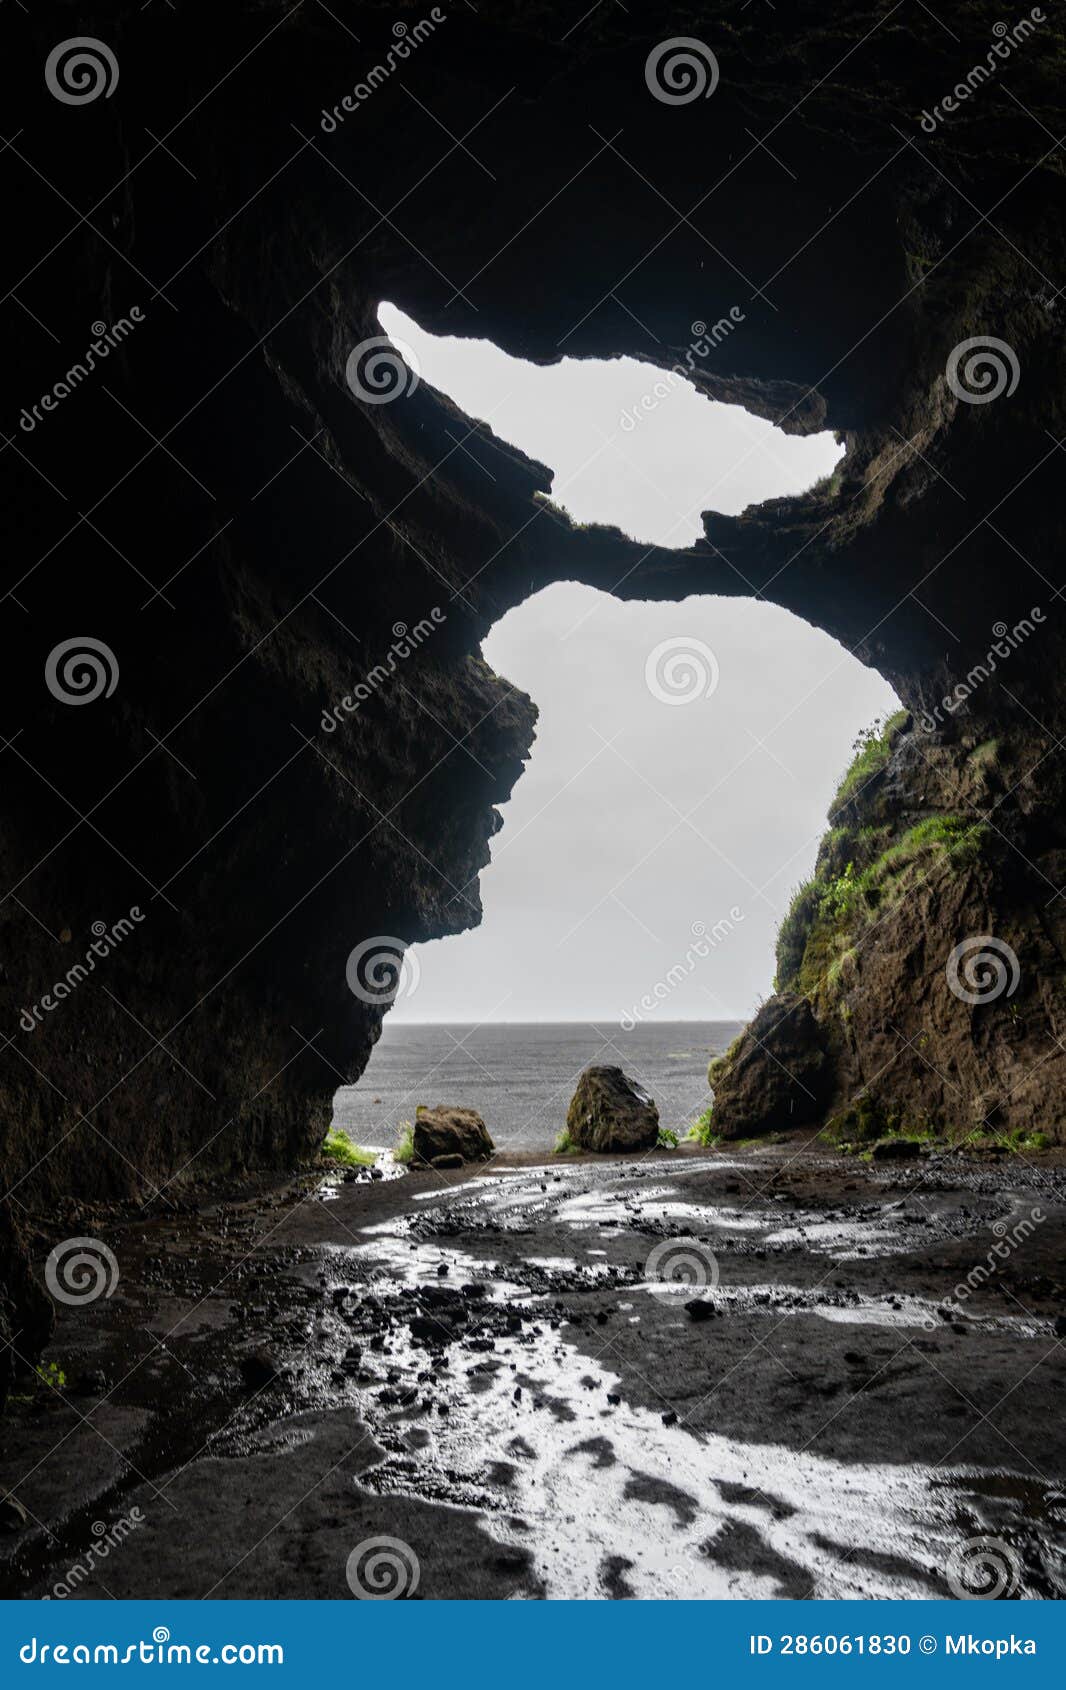 gÃÂ­gjagjÃÂ¡ also known as the yoda cave, hjÃÂ¶rleifshÃÂ¶fÃÂ°i at iceland's south coast